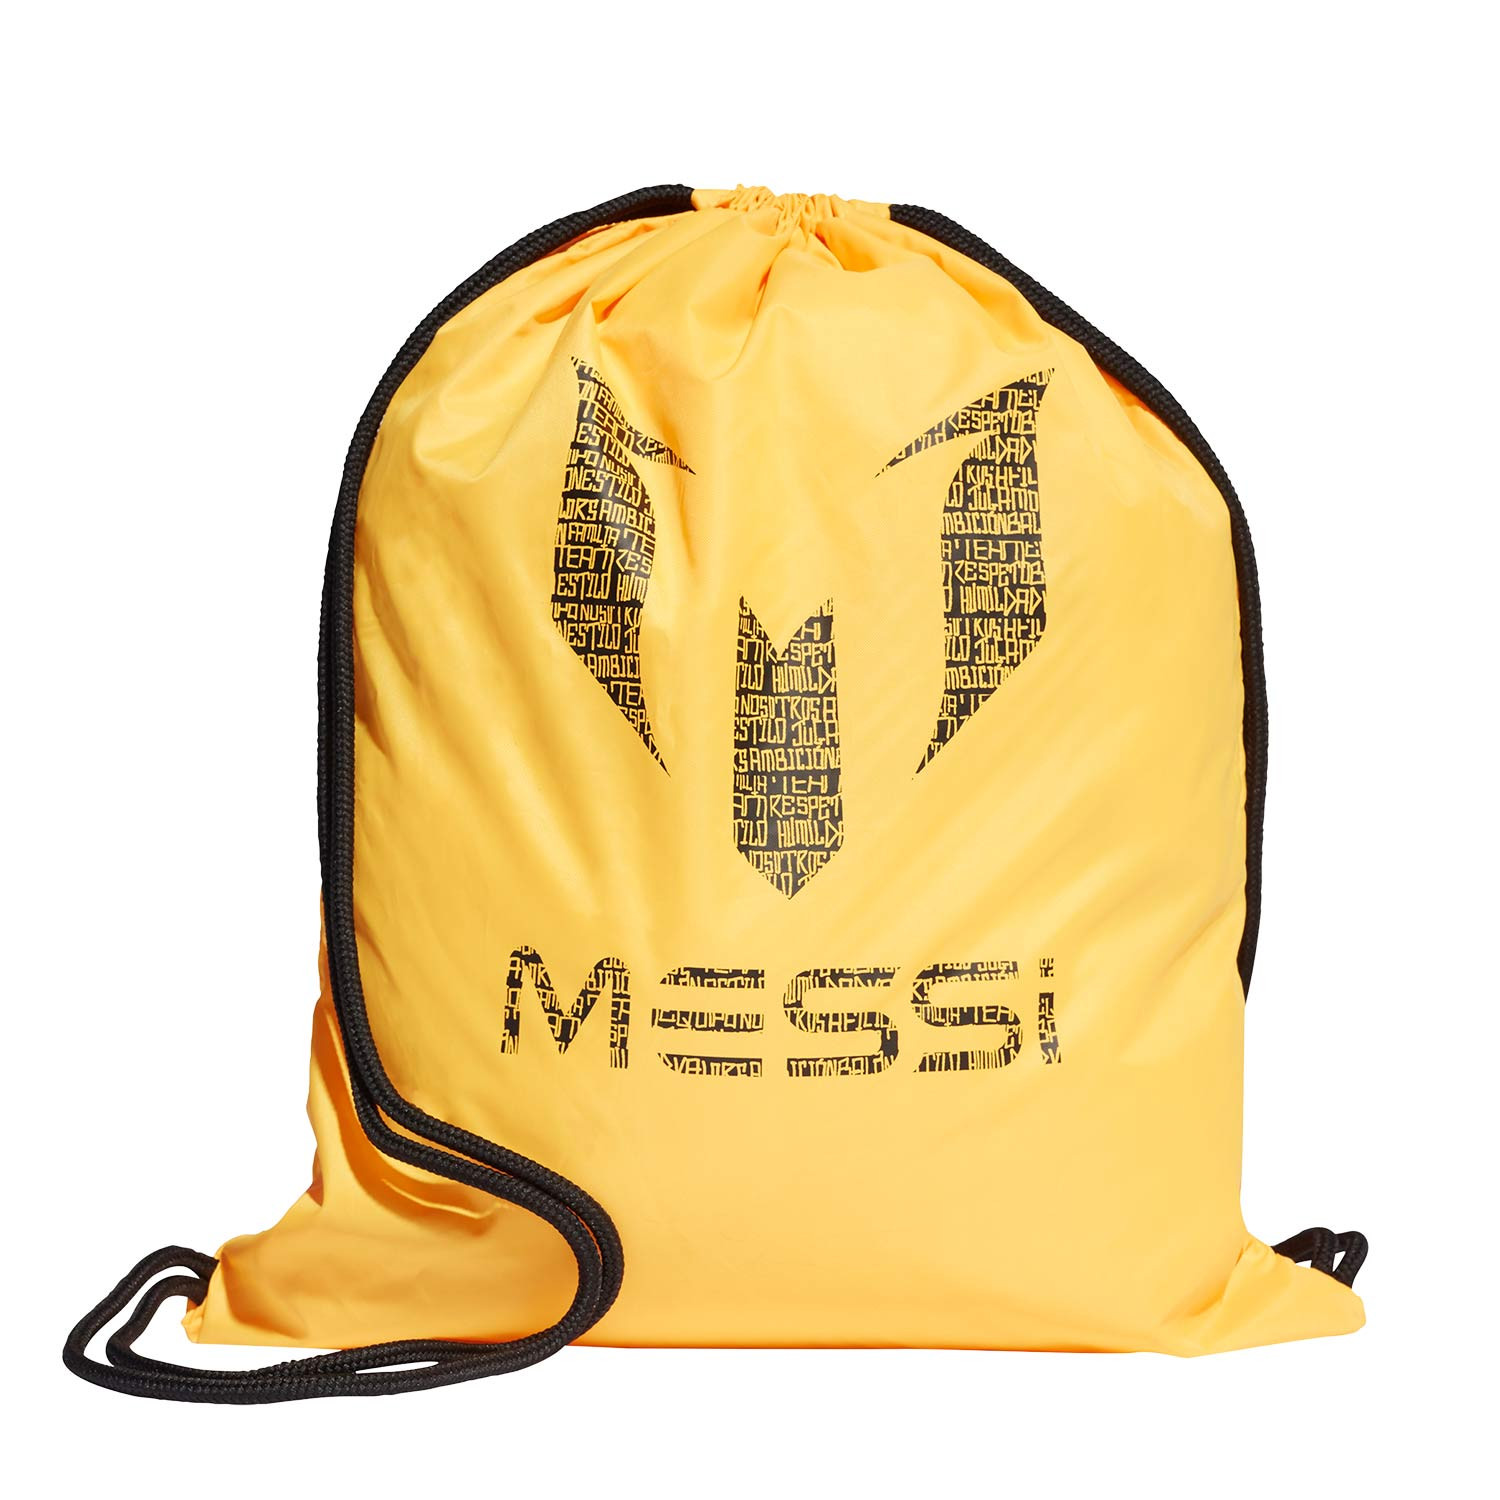 solo Anzai Persona especial Gymbag adidas Messi dorado | futbolmania